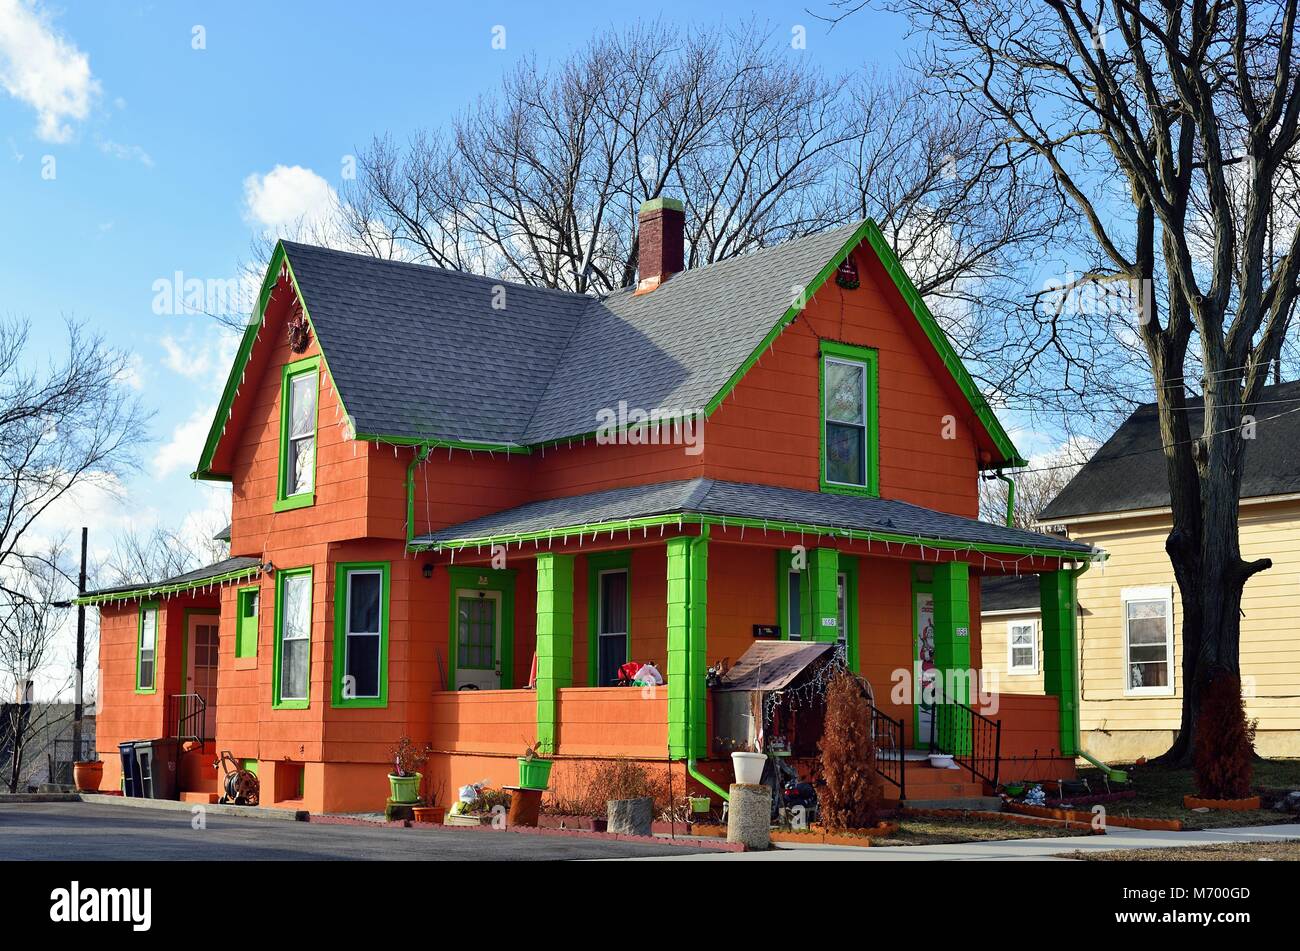 Un colorato home all'interno di uno dei più storici quartieri residenziali k a Elgin, Illinois, Stati Uniti d'America. Foto Stock